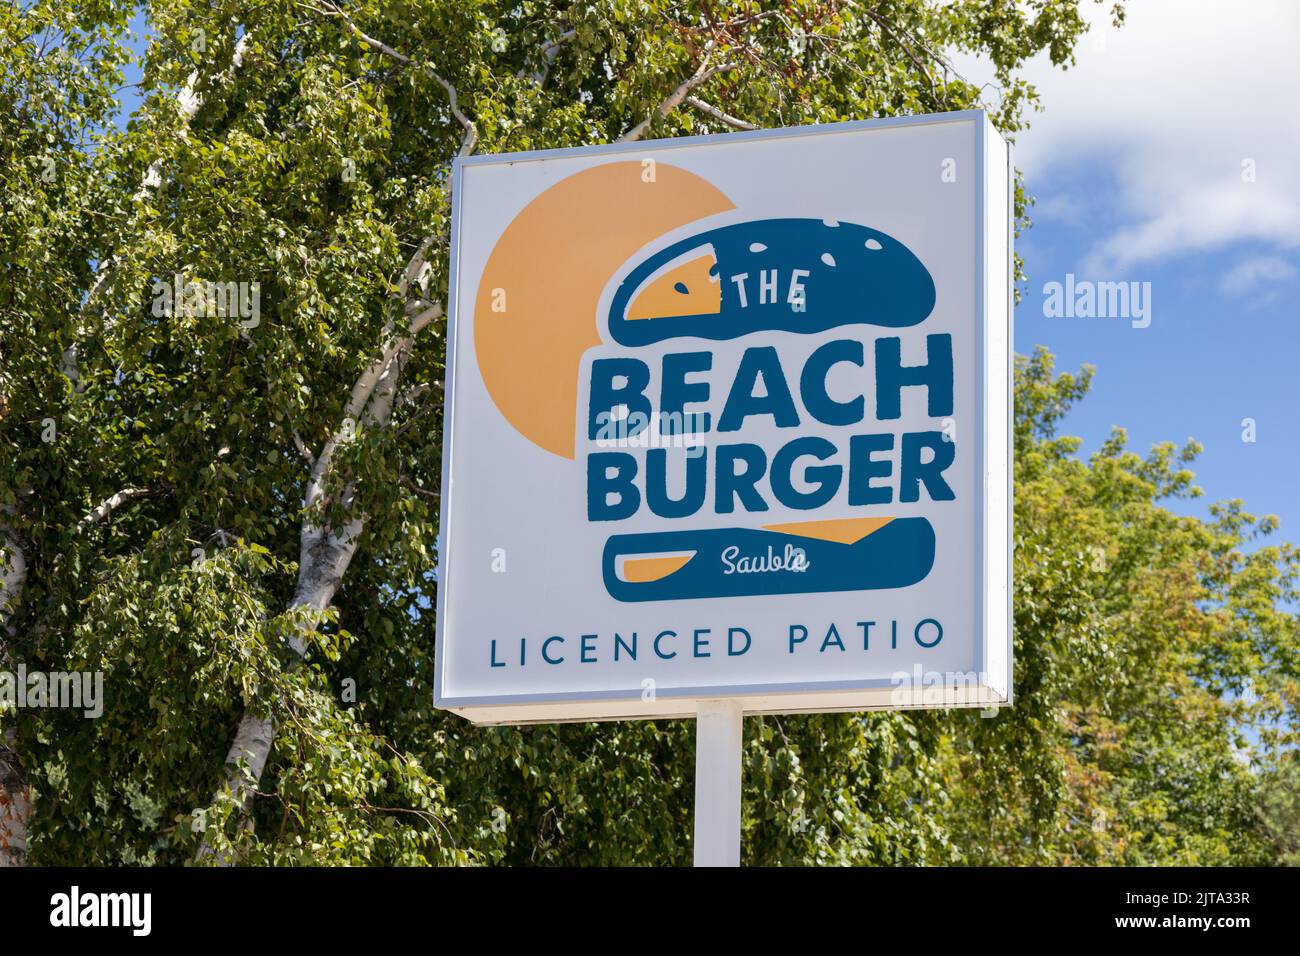 The Beach Burger Restaurant Iniciar sesión en Sauble Beach Ontario Canadá, Burger Restaurant Inicio de sesión de comida rápida Foto de stock